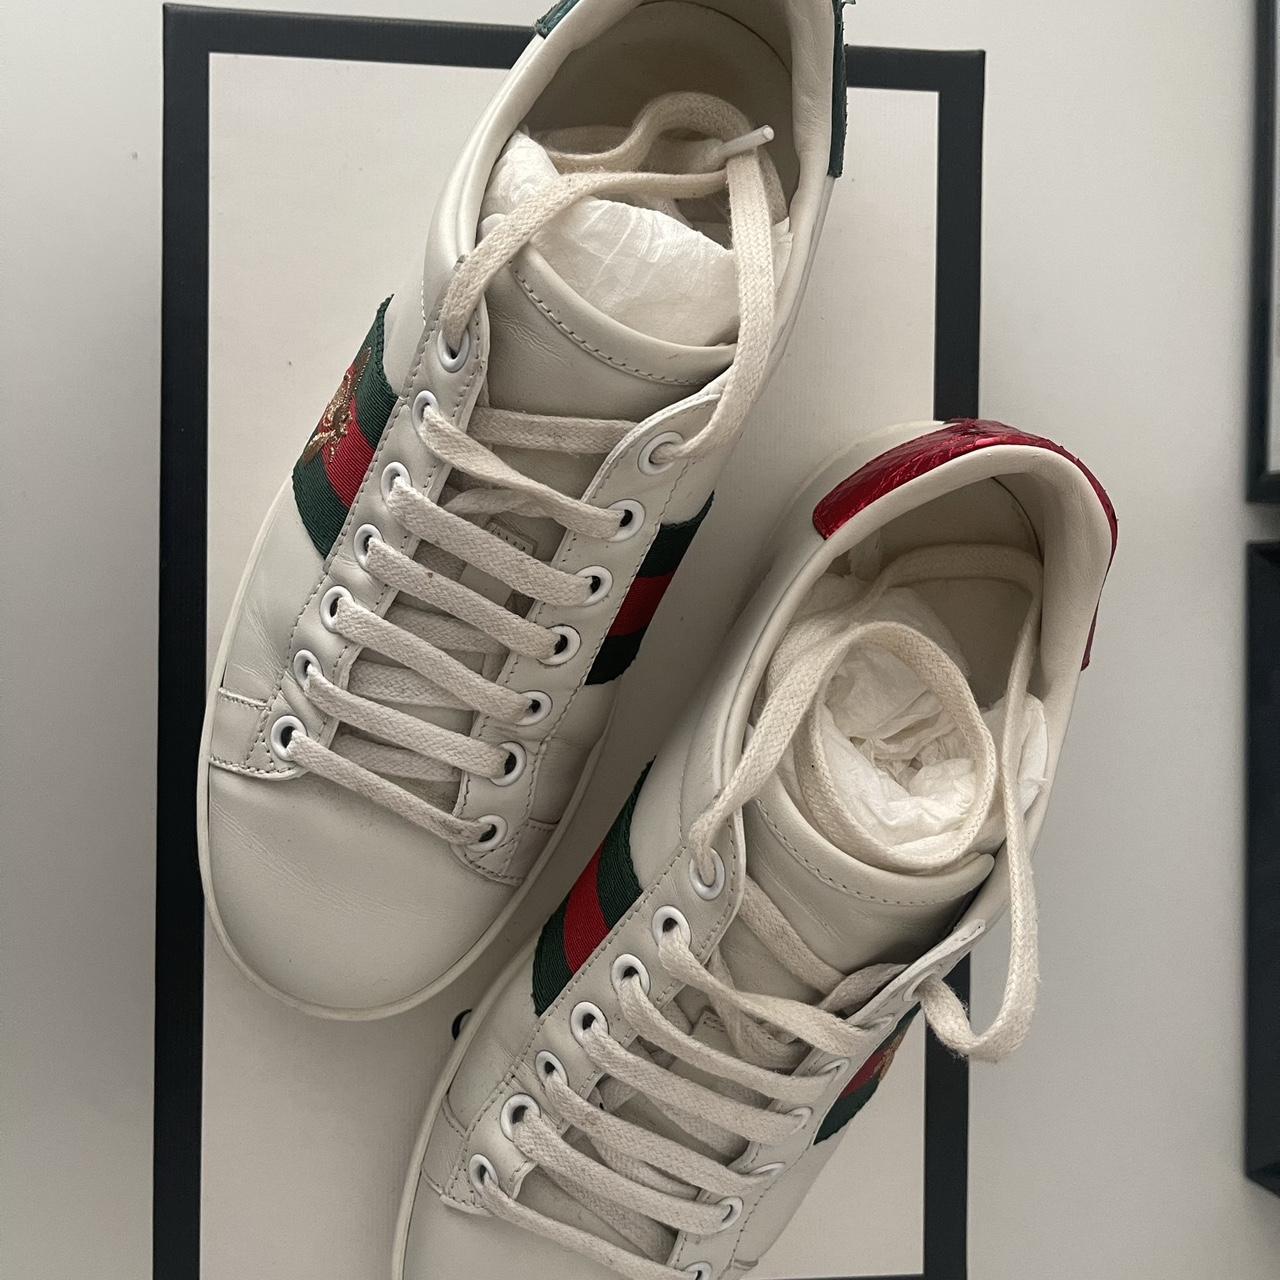 Gucci Ace Sneakers Size IT 34.5 Still in great... - Depop